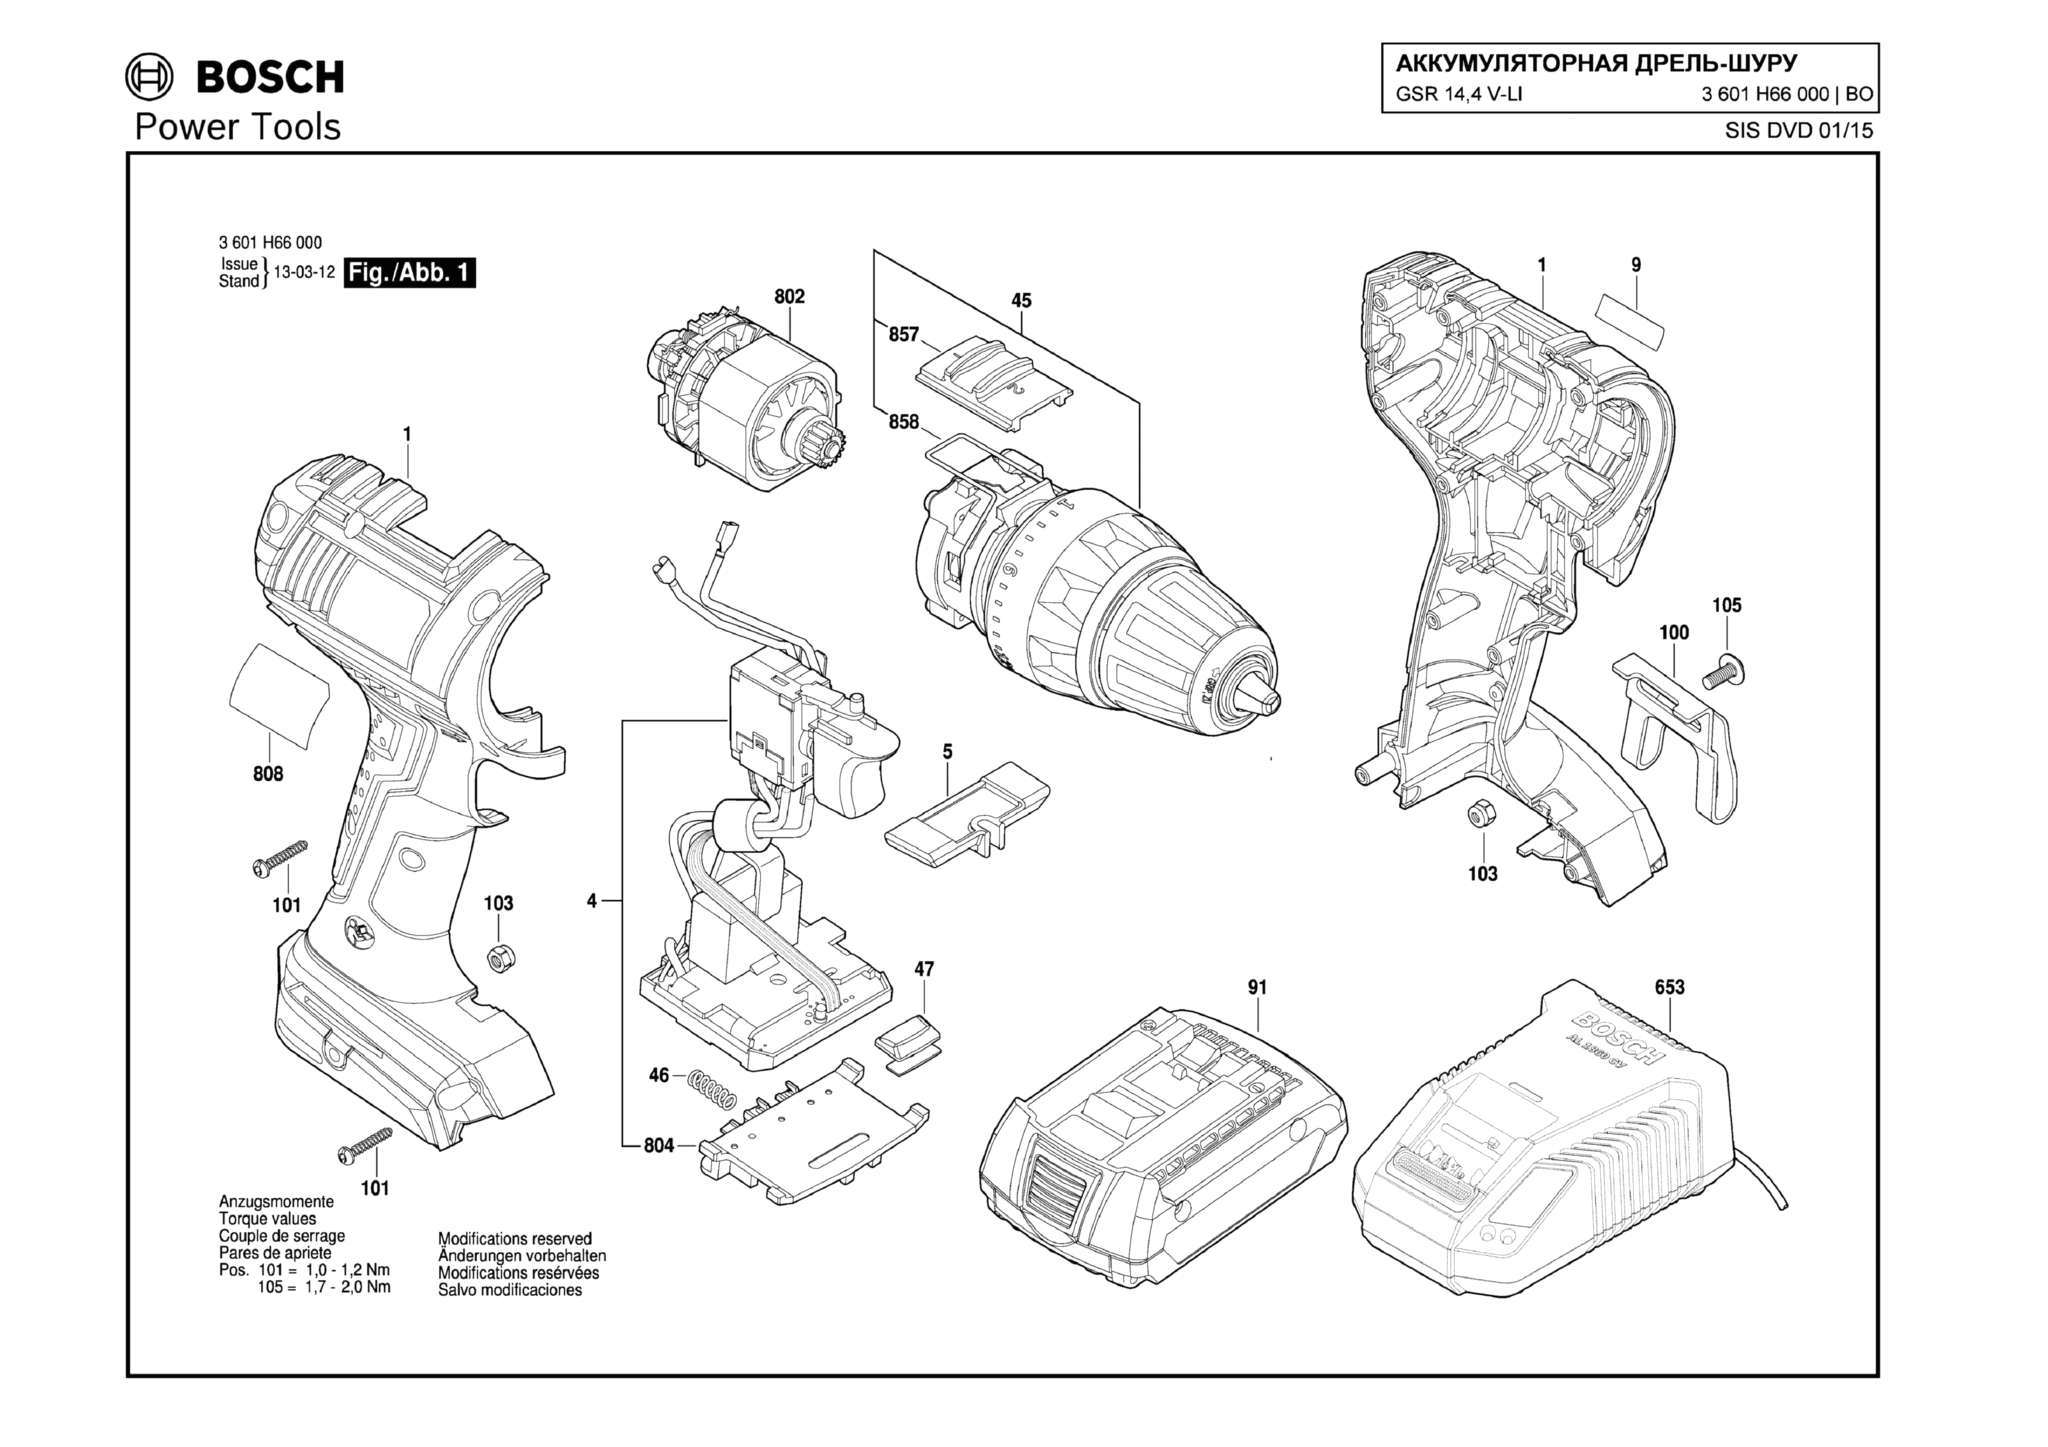 Запчасти, схема и деталировка Bosch GSR 14,4 V-LI (ТИП 3601H66000)